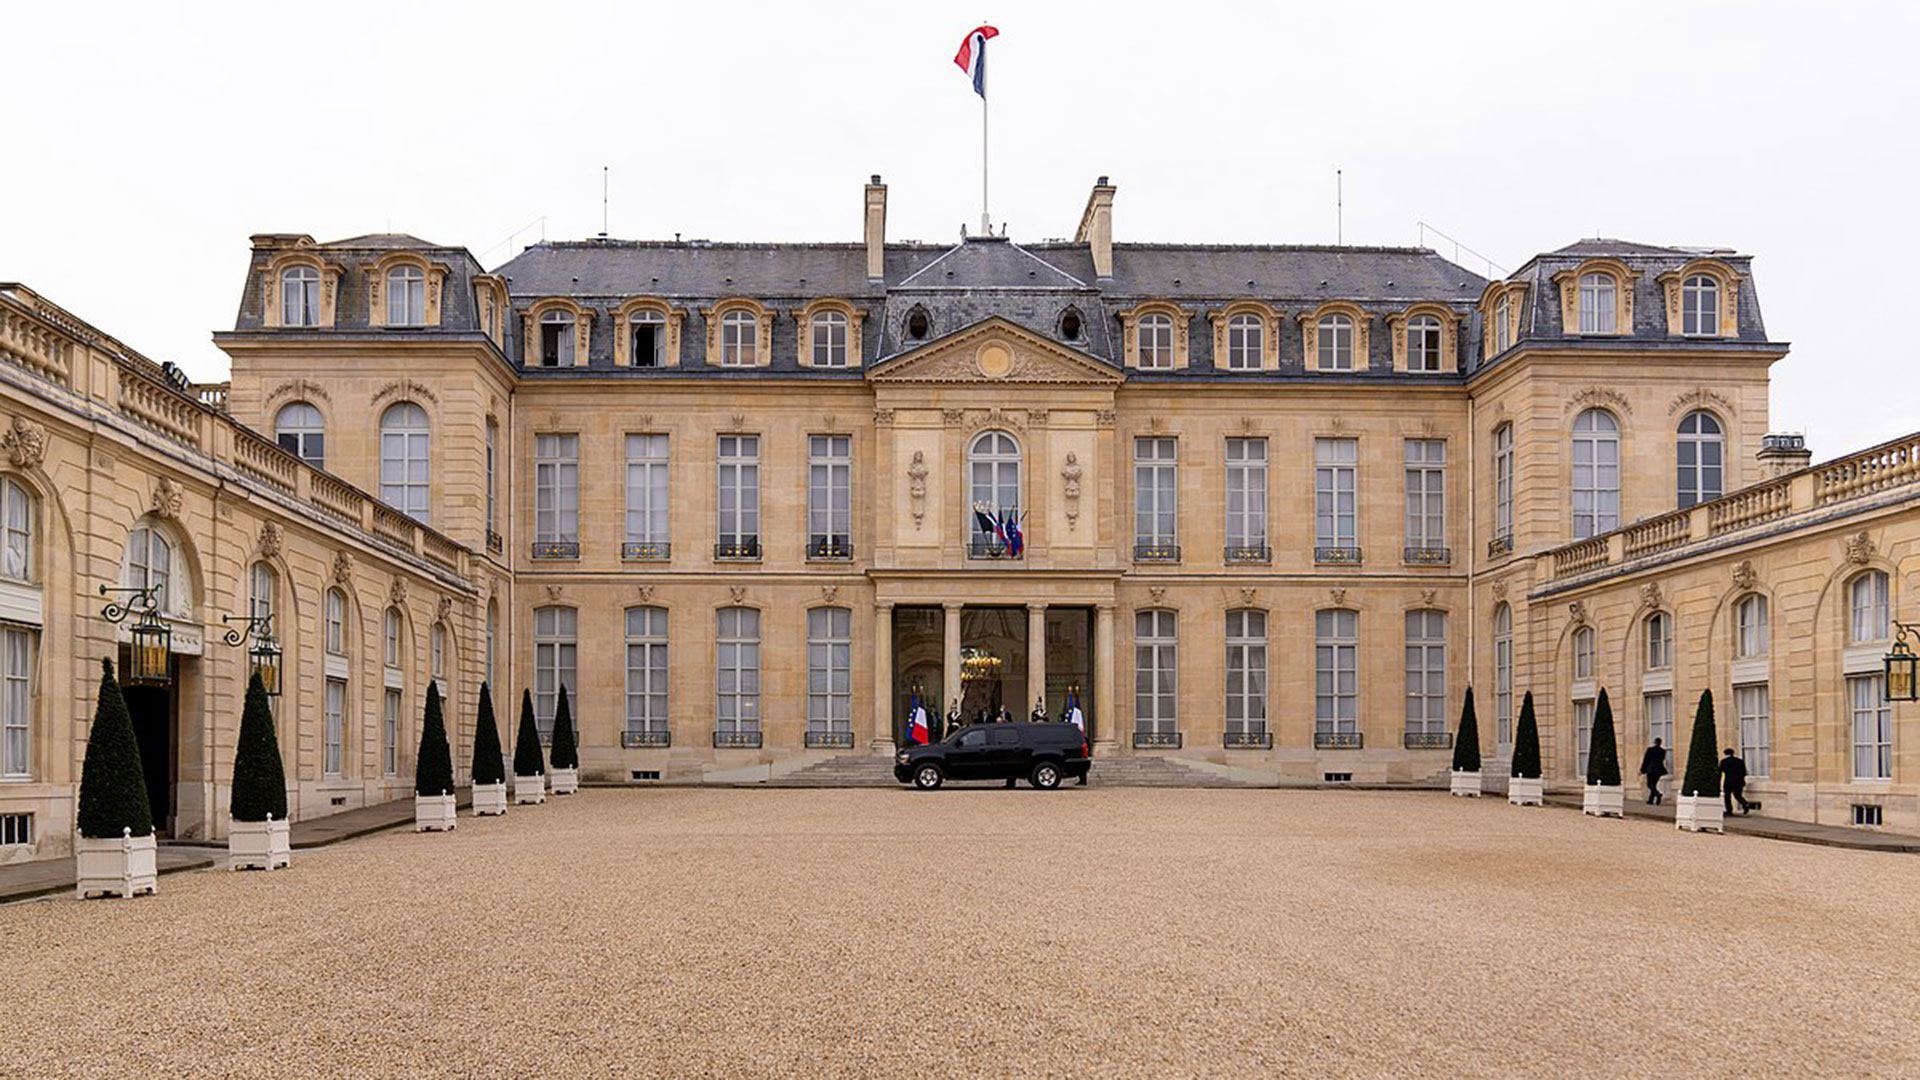 La presunta agresión tuvo lugar el pasado mes de julio tras una recepción de despedida de un general a la que asistió el presidente Emmanuel Macron en el Palacio del Elíseo